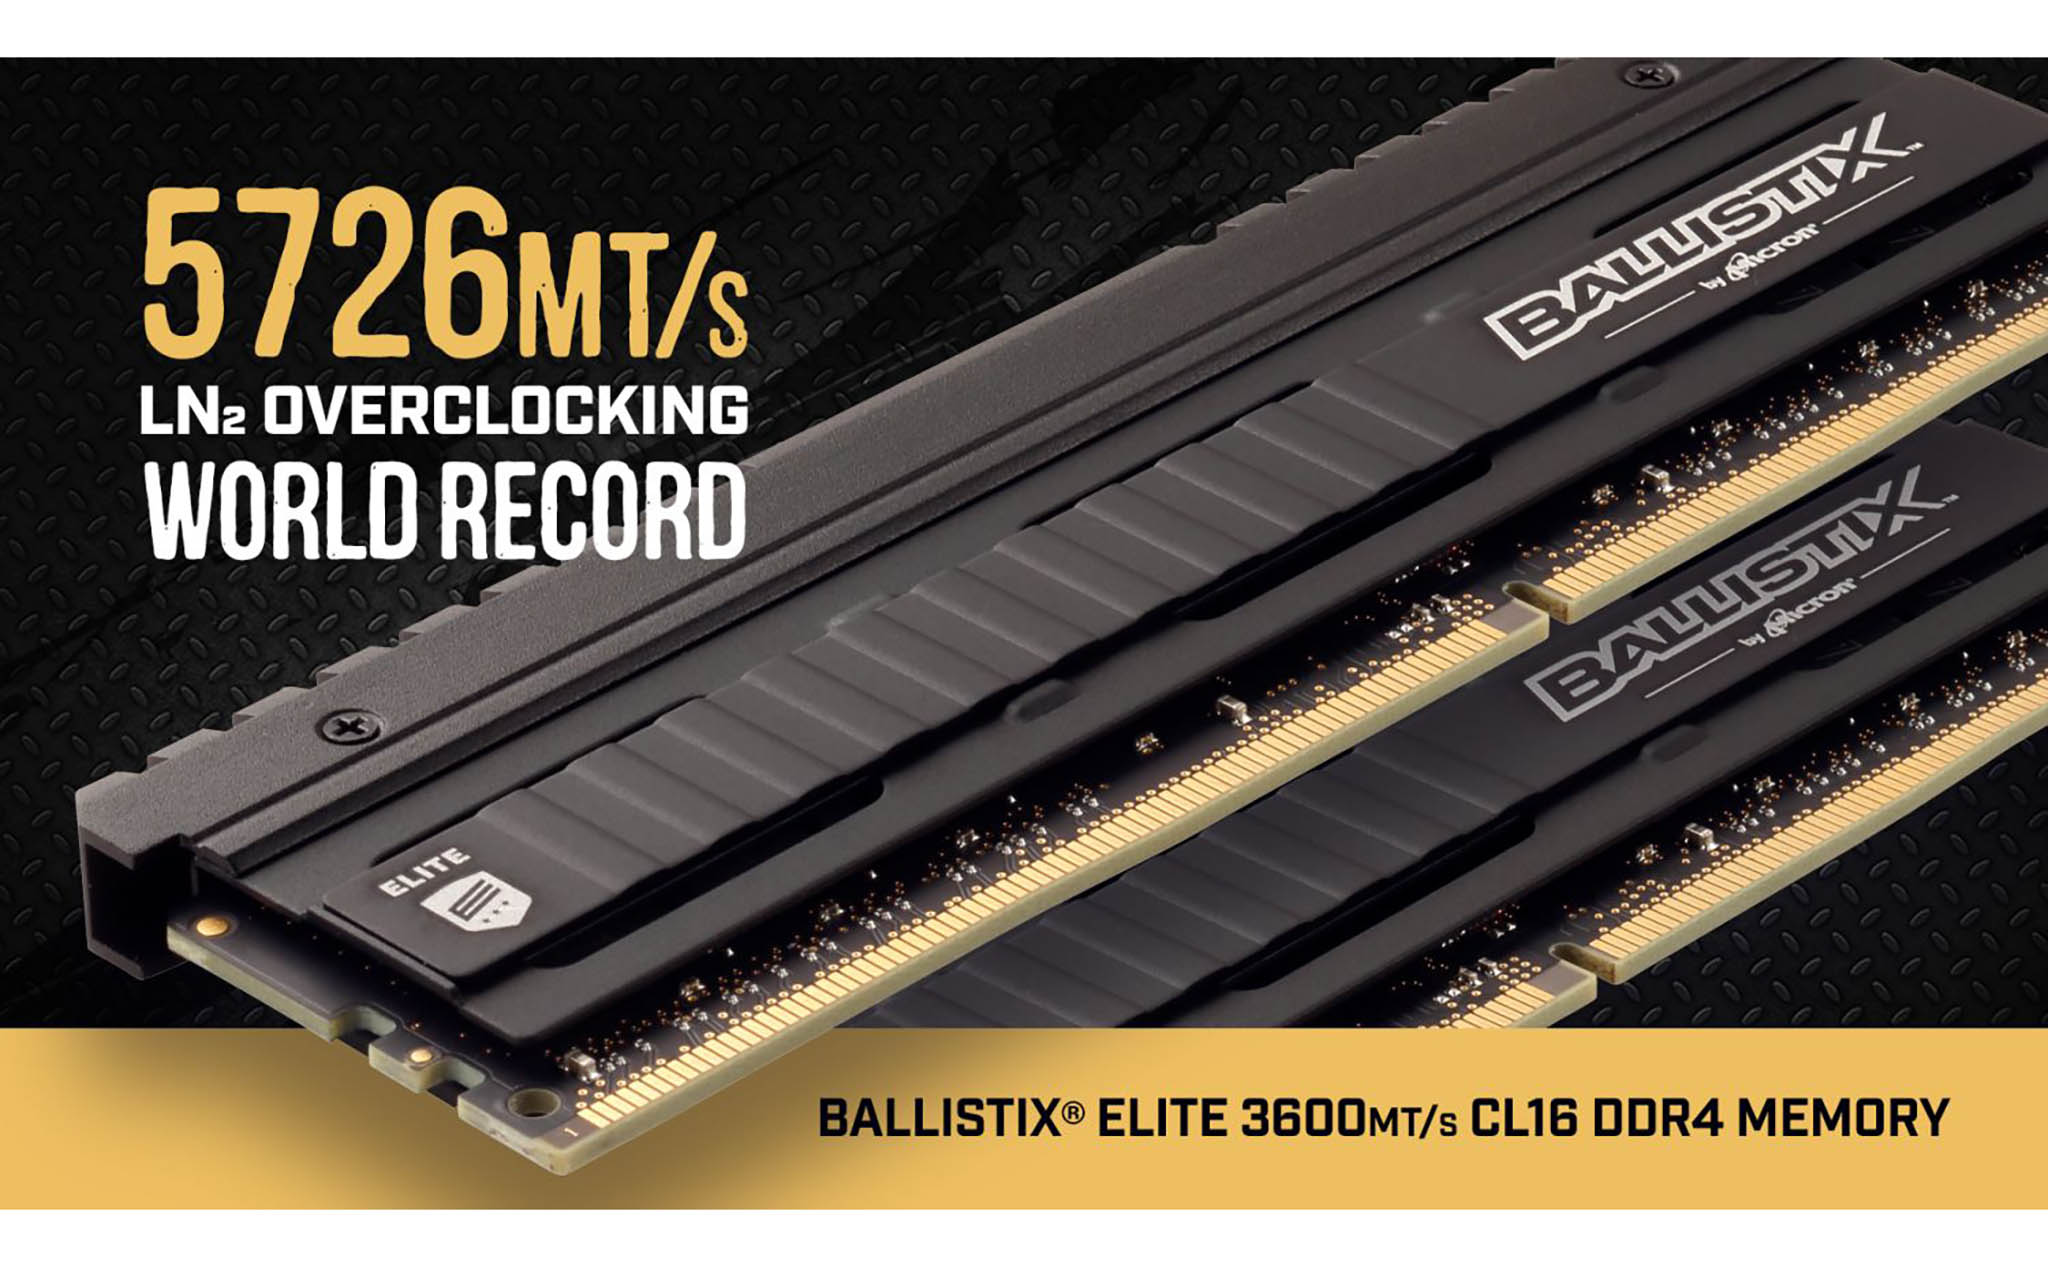 Ballistix Elite DDR4-3600 phá kỷ lục ép xung RAM với 5726 MHz, đế chip Micron E-die